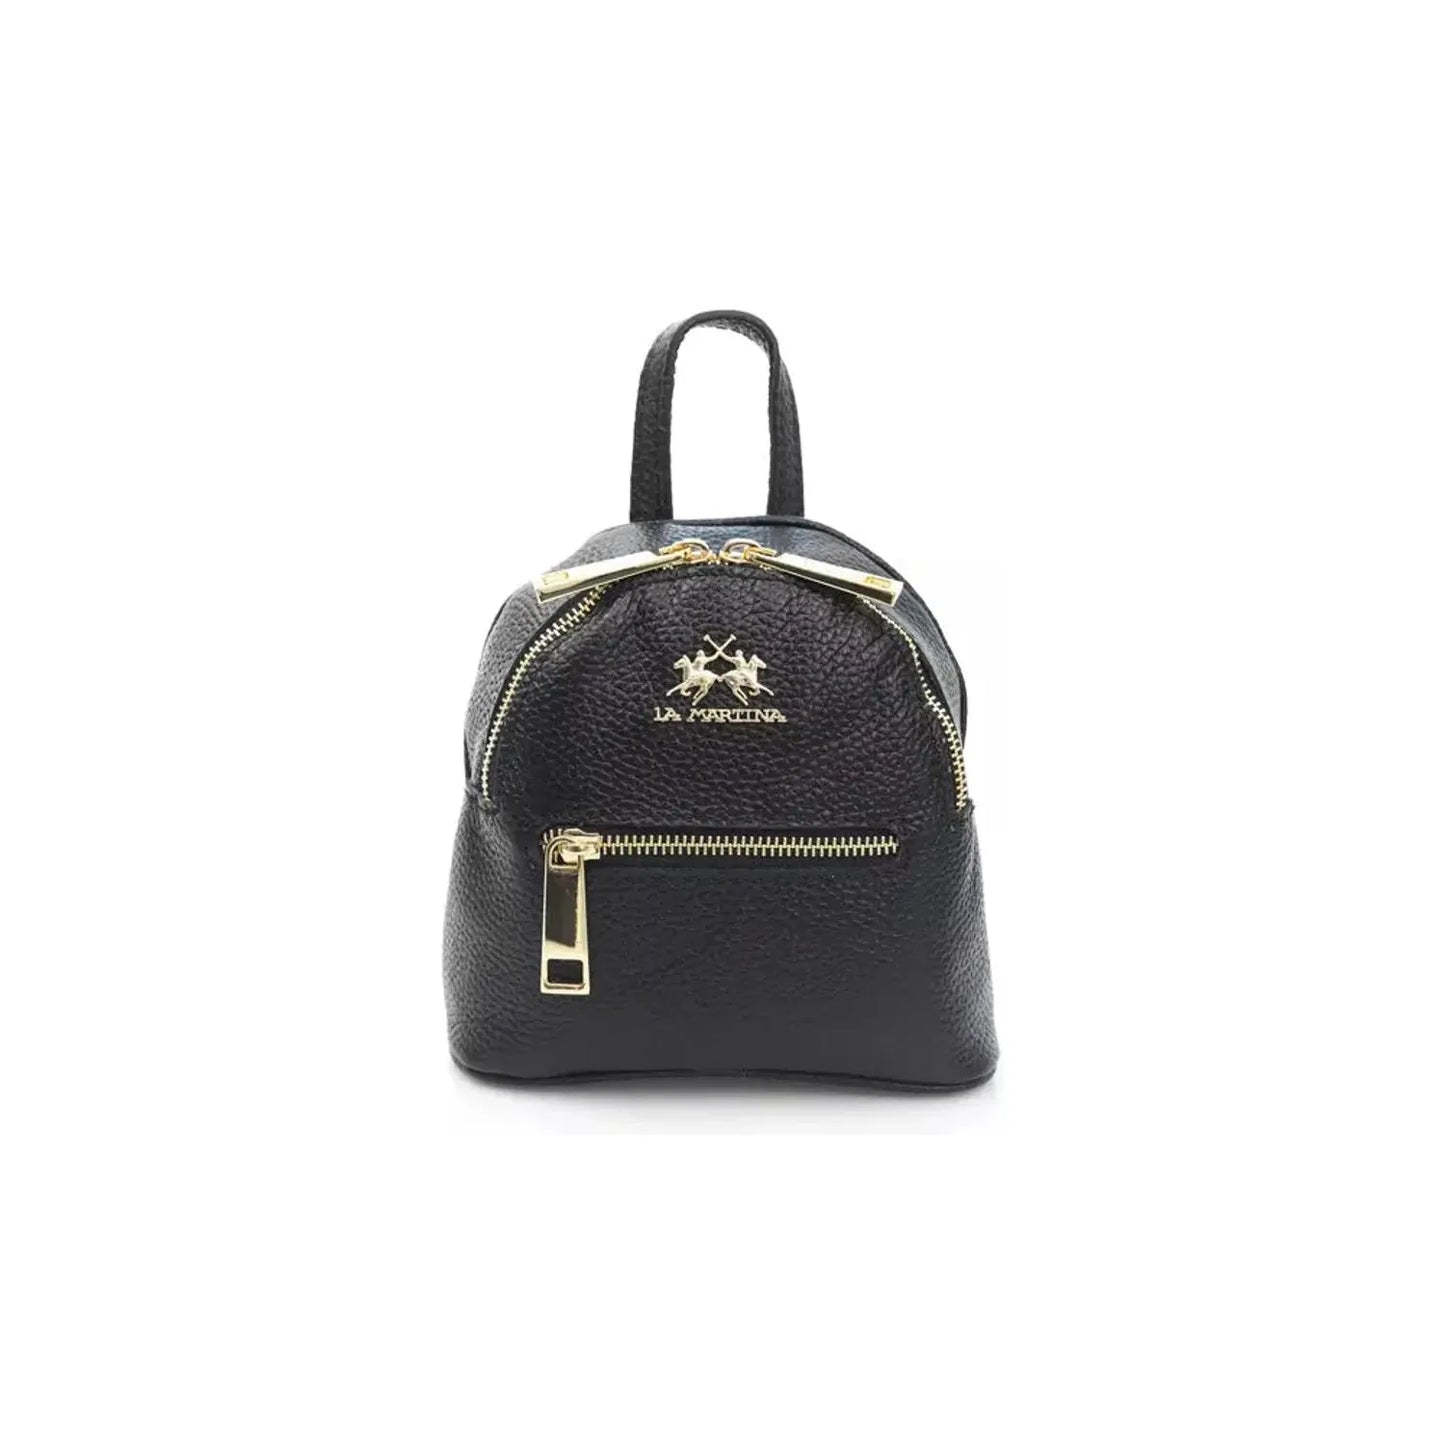 La Martina Elegant Leather Messenger Bag with Logo Detailing black-messenger-bag product-22973-1925191476-25-6dce3560-53d.webp